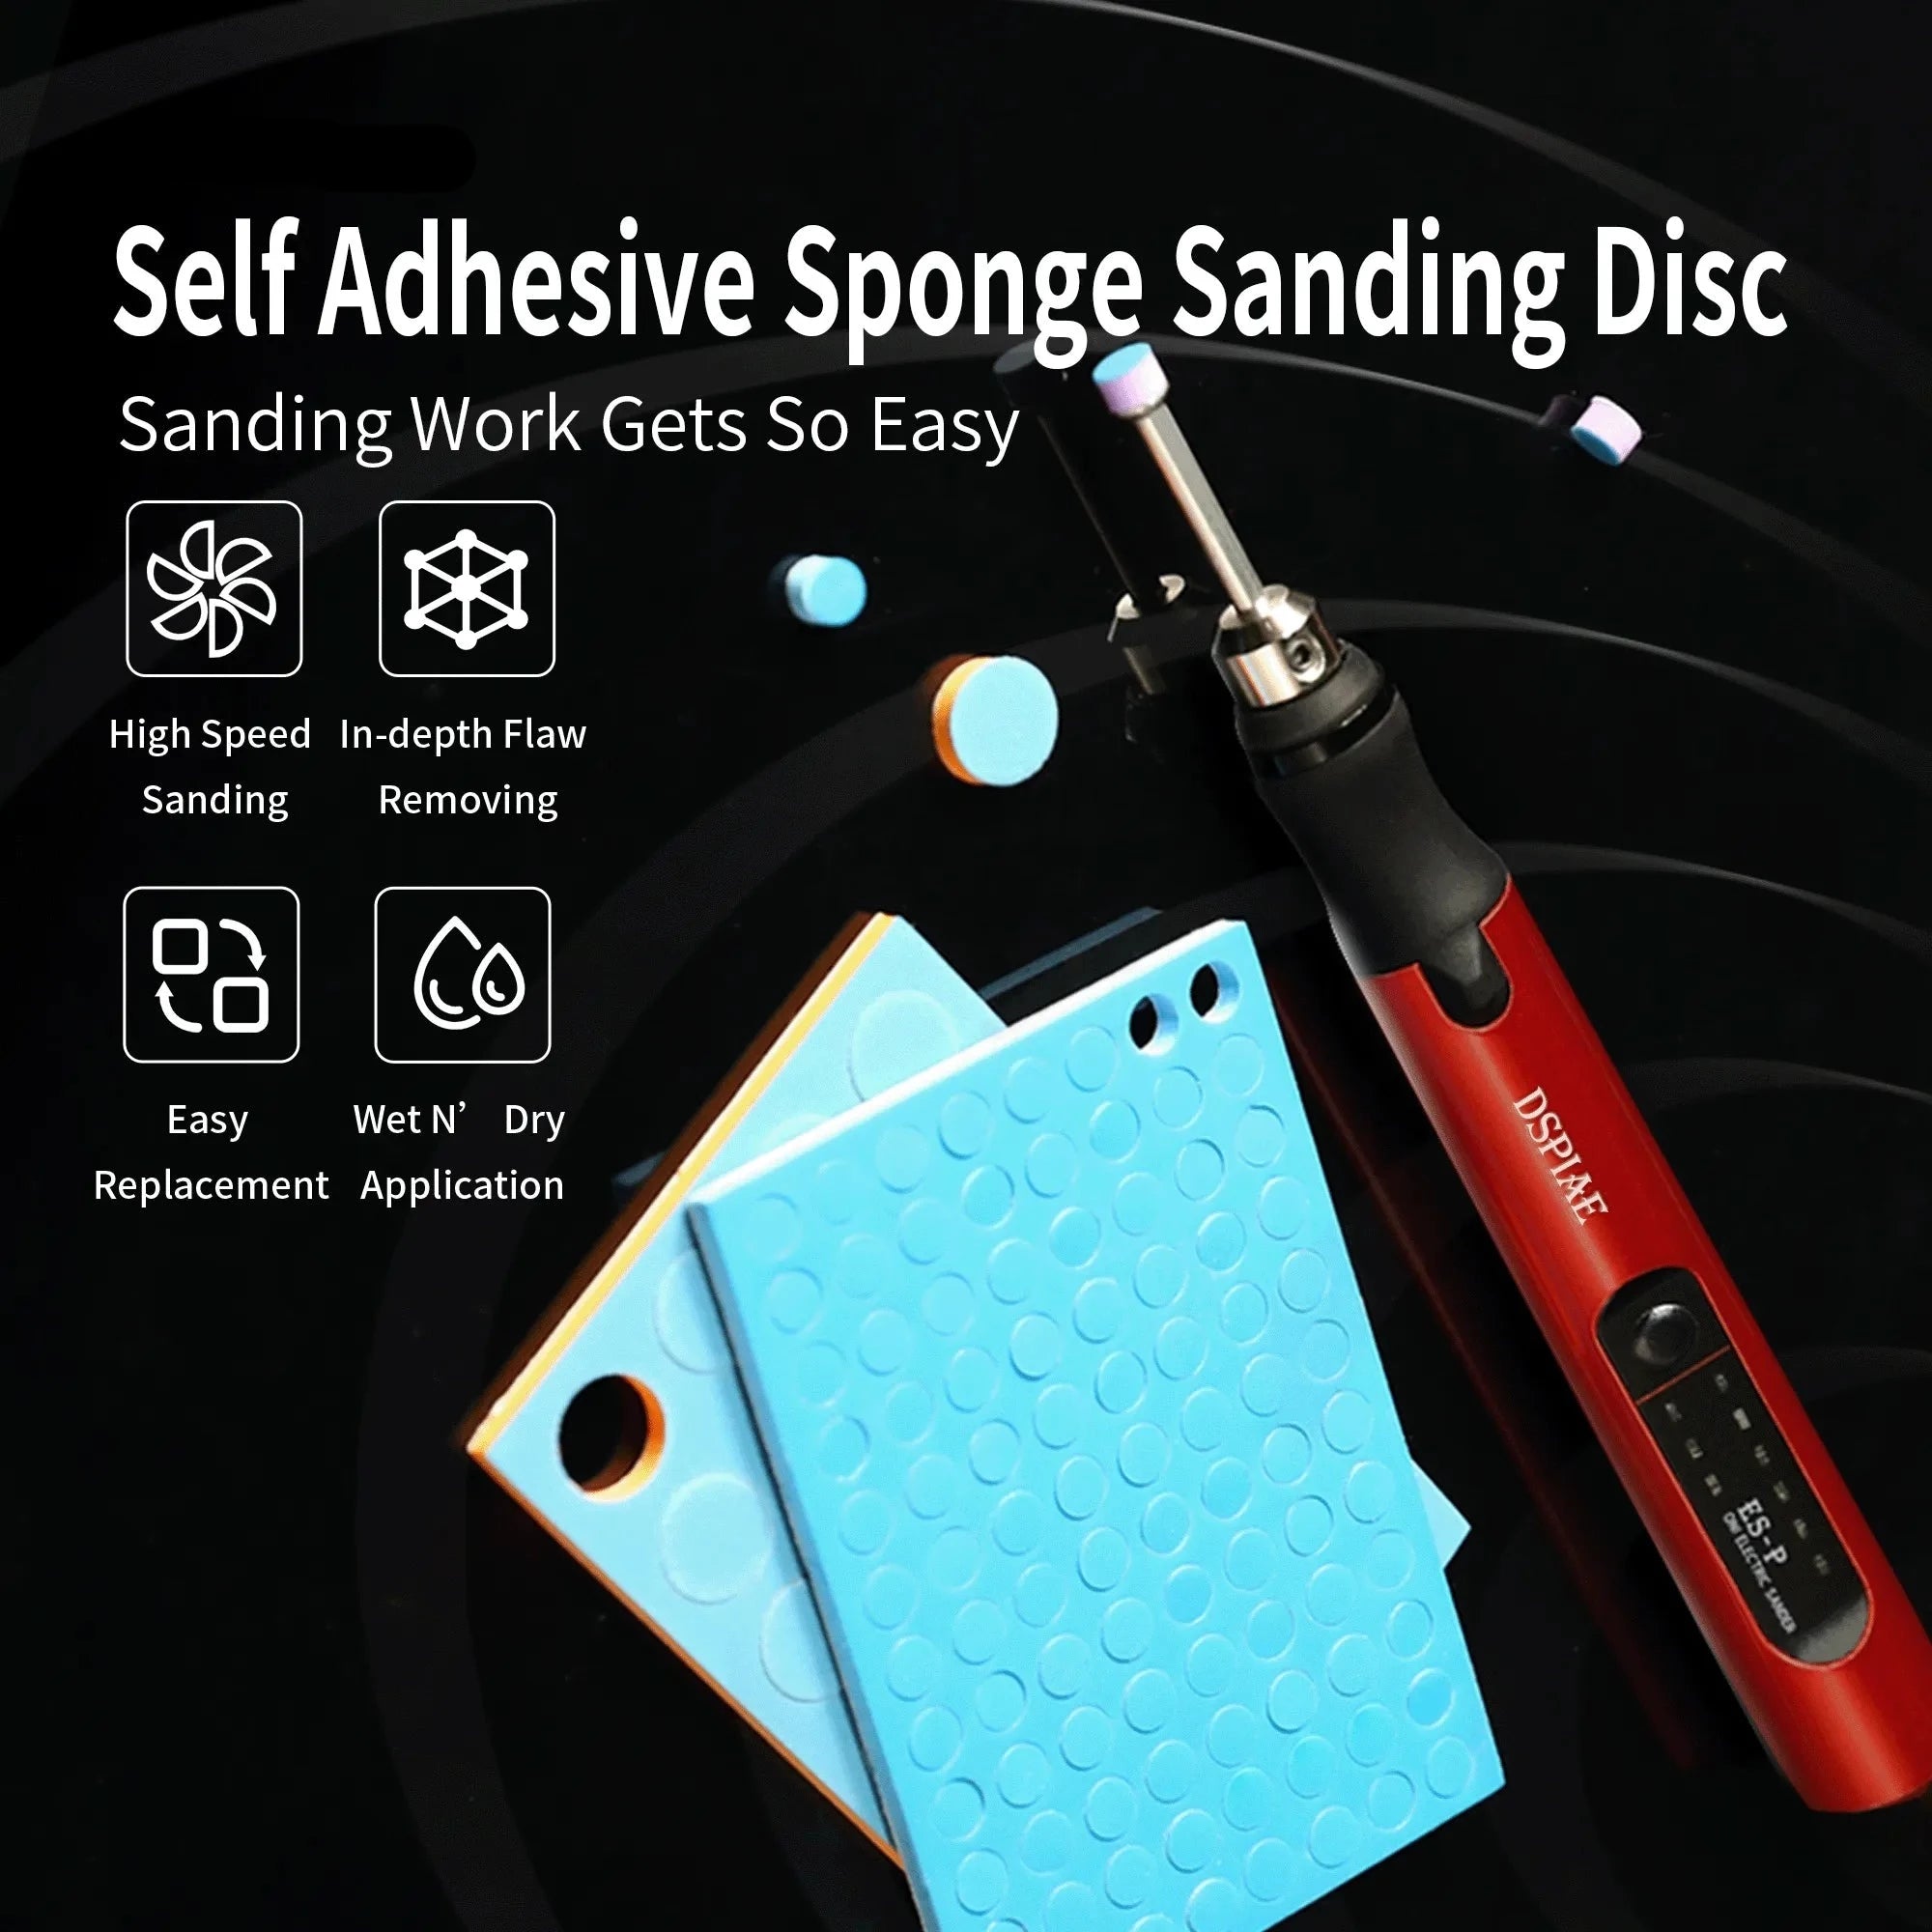 Sponge Sanding Disc Military Model Making Tool